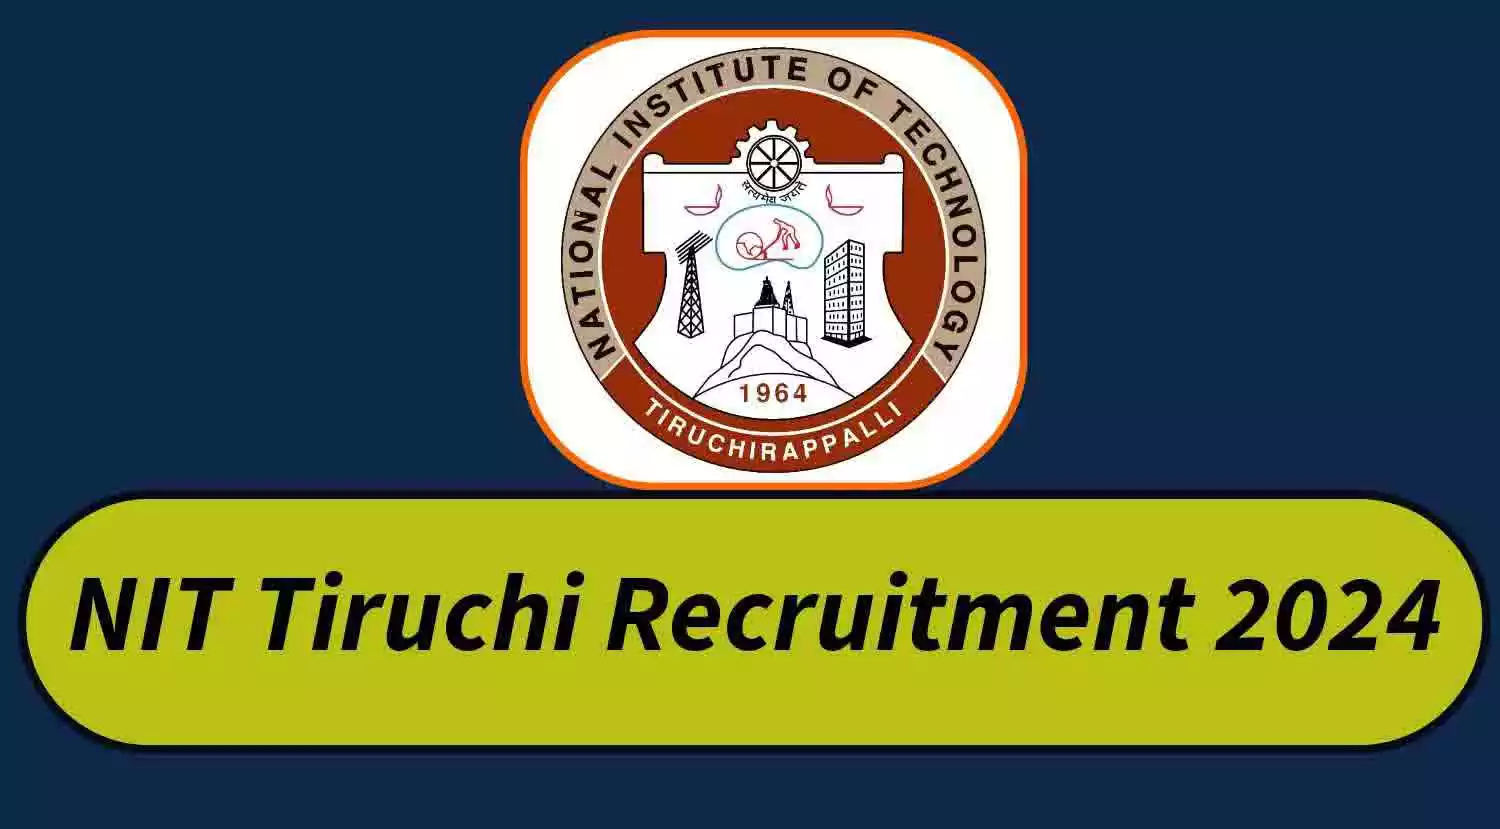 2024ல் National Institute of Technology Tiruchirappalli வேலைவாய்ப்பு: JRF / Project Associate காலி பணியிடங்கள் நிரப்பப்படவுள்ளன - B.E. / B.Tech / M.E. / M.Tech தேர்ச்சி பெற்றவர்கள் விண்ணப்பிக்கலாம் | ரூ.31,000 வரை சம்பளம்